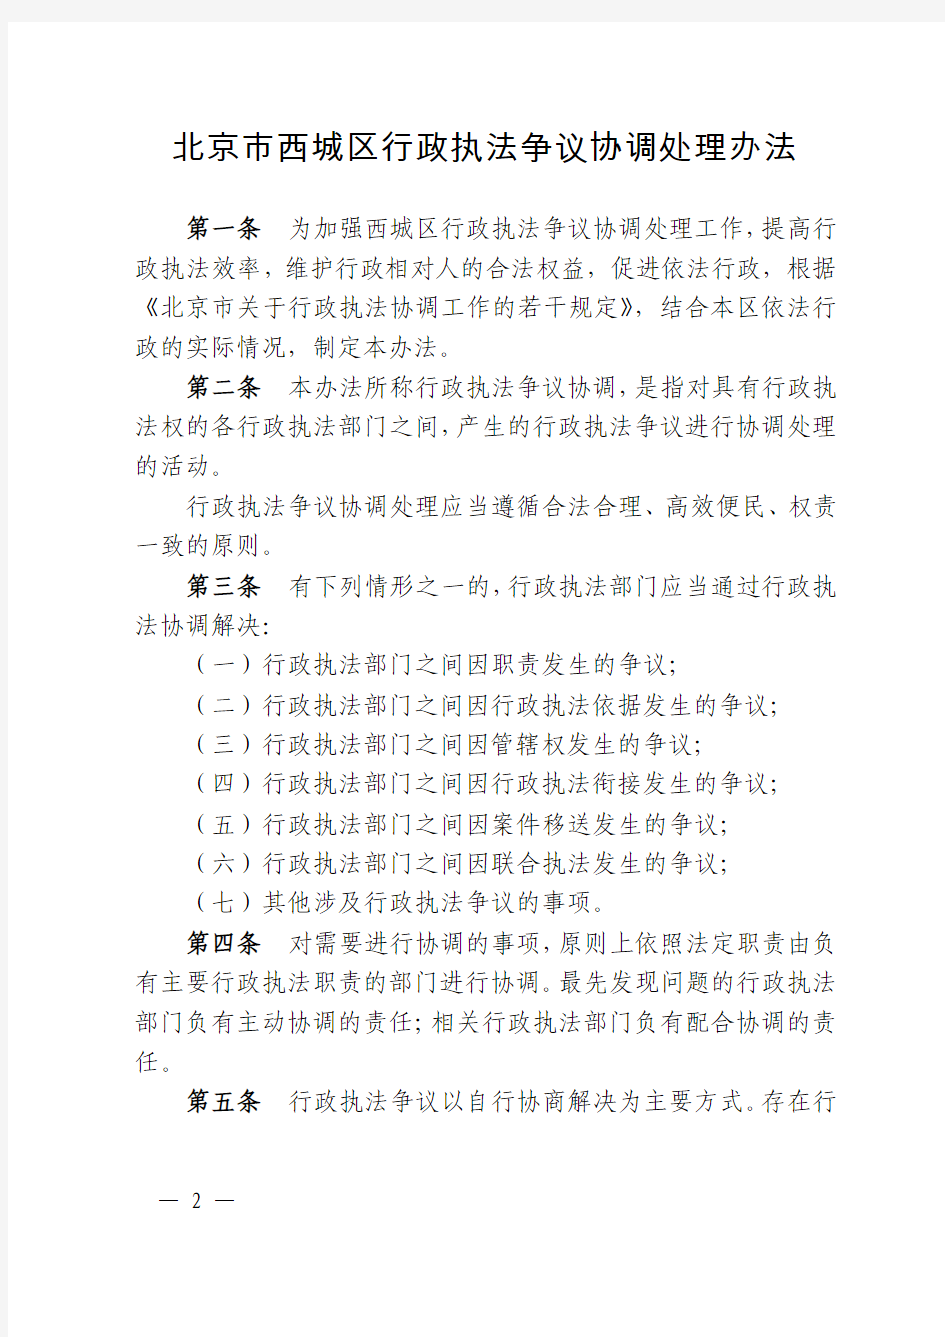 北京市西城区人民政府关于印发行政执法责任制配套制度的通知